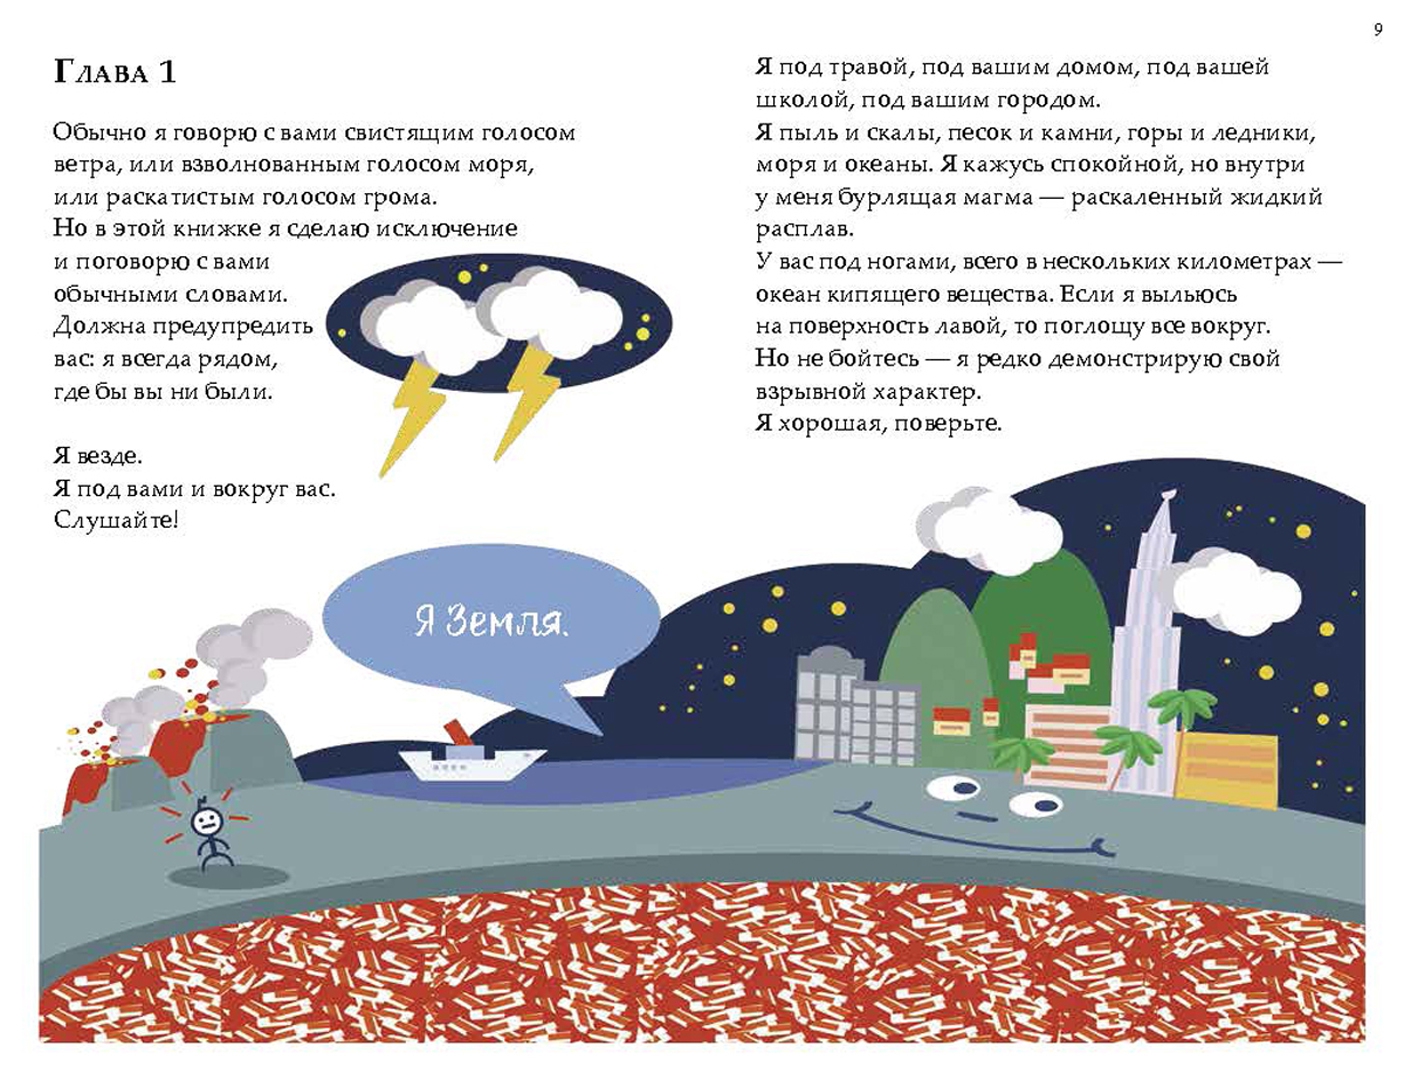 Иллюстрация 1 из 7 для История Земли, рассказанная ею самой - Лука Новелли | Лабиринт - книги. Источник: Лабиринт